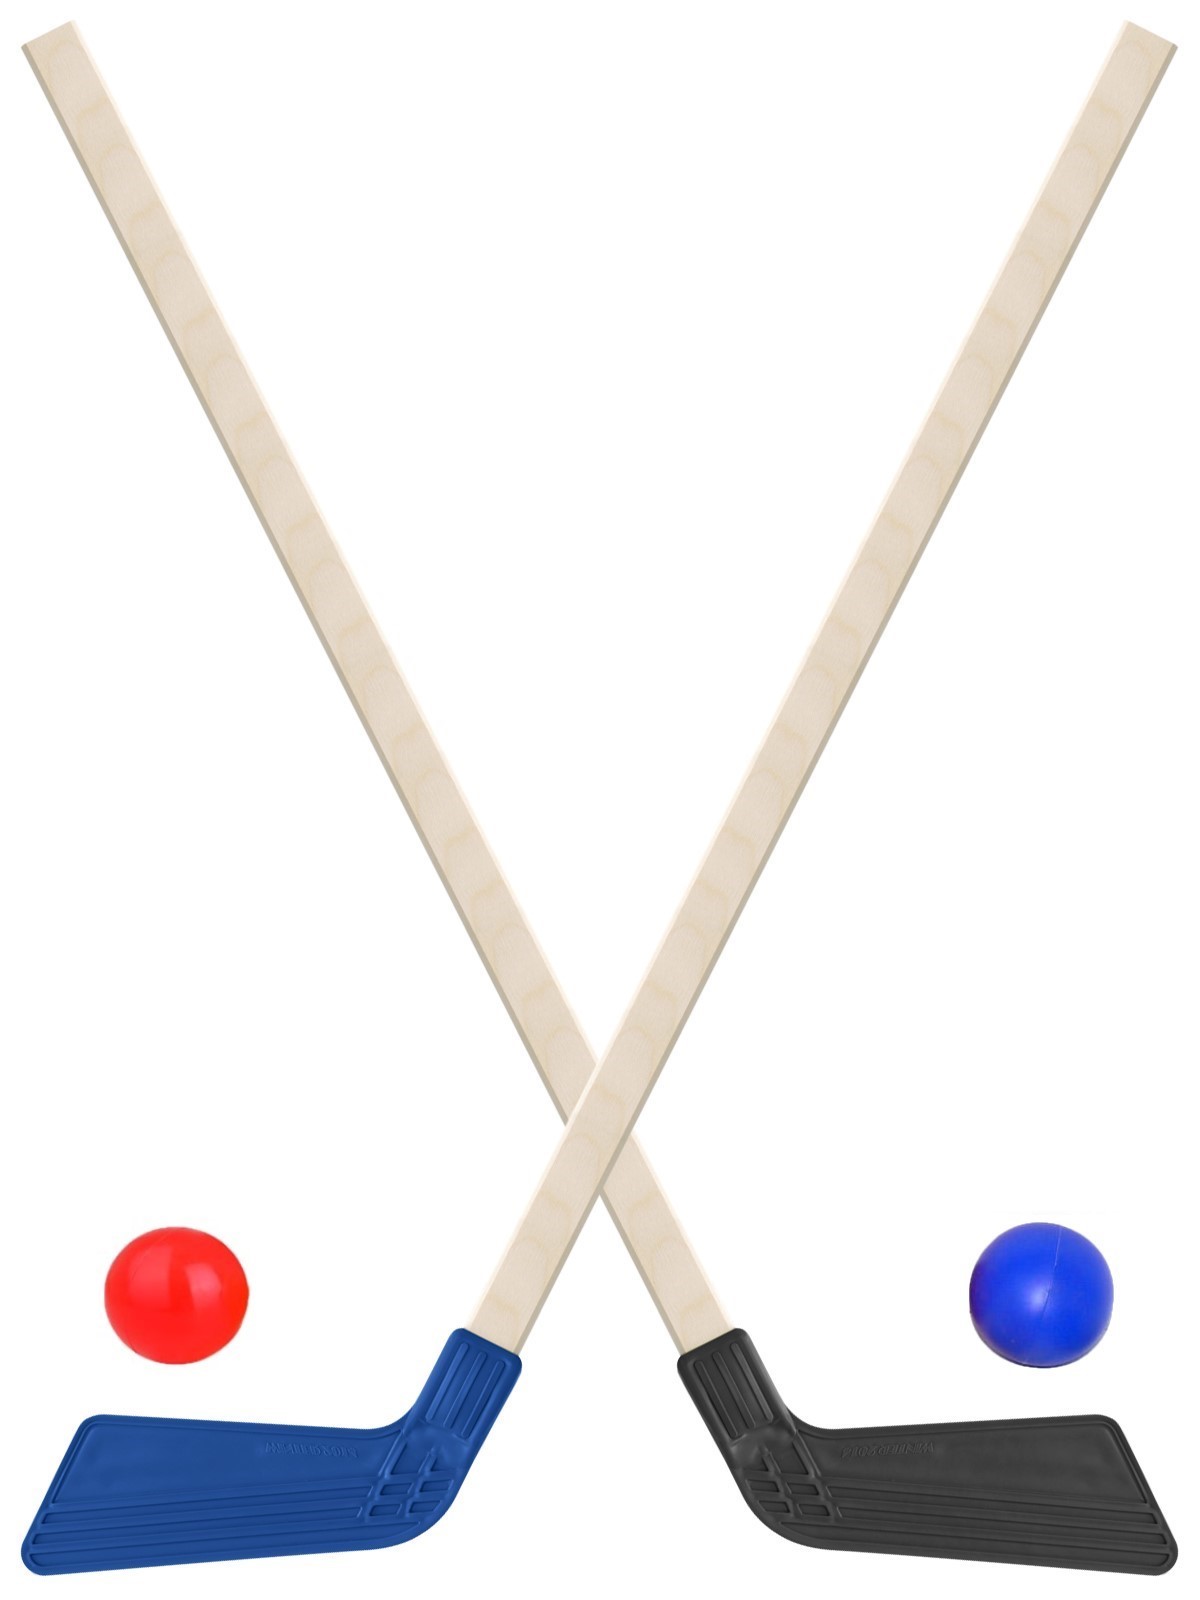 Детский хоккейный набор Задира-плюс  Клюшка хоккейная детская 2шт (черная+синяя)+2 мяча